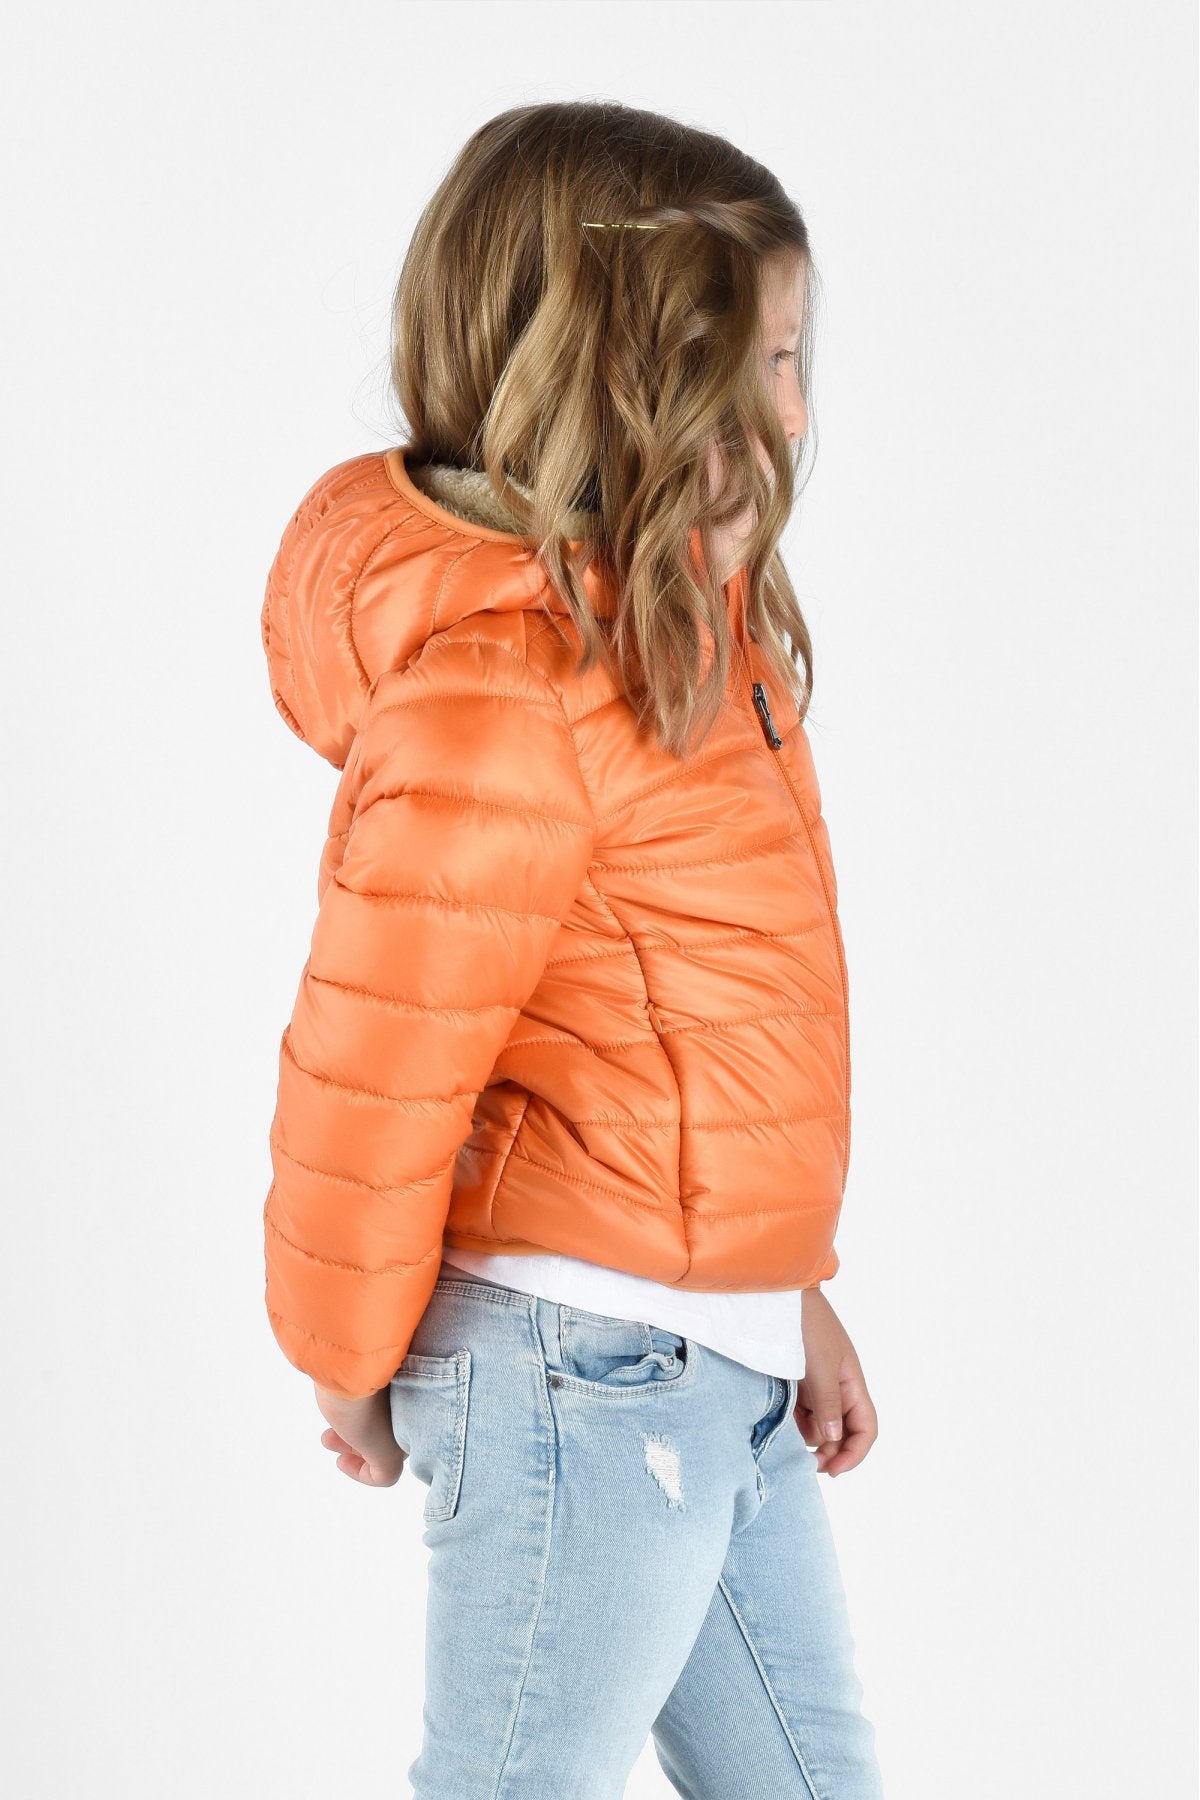 CANADIAN Kids's Jacket Tylers Bay Sherpa-G222220KRE orange